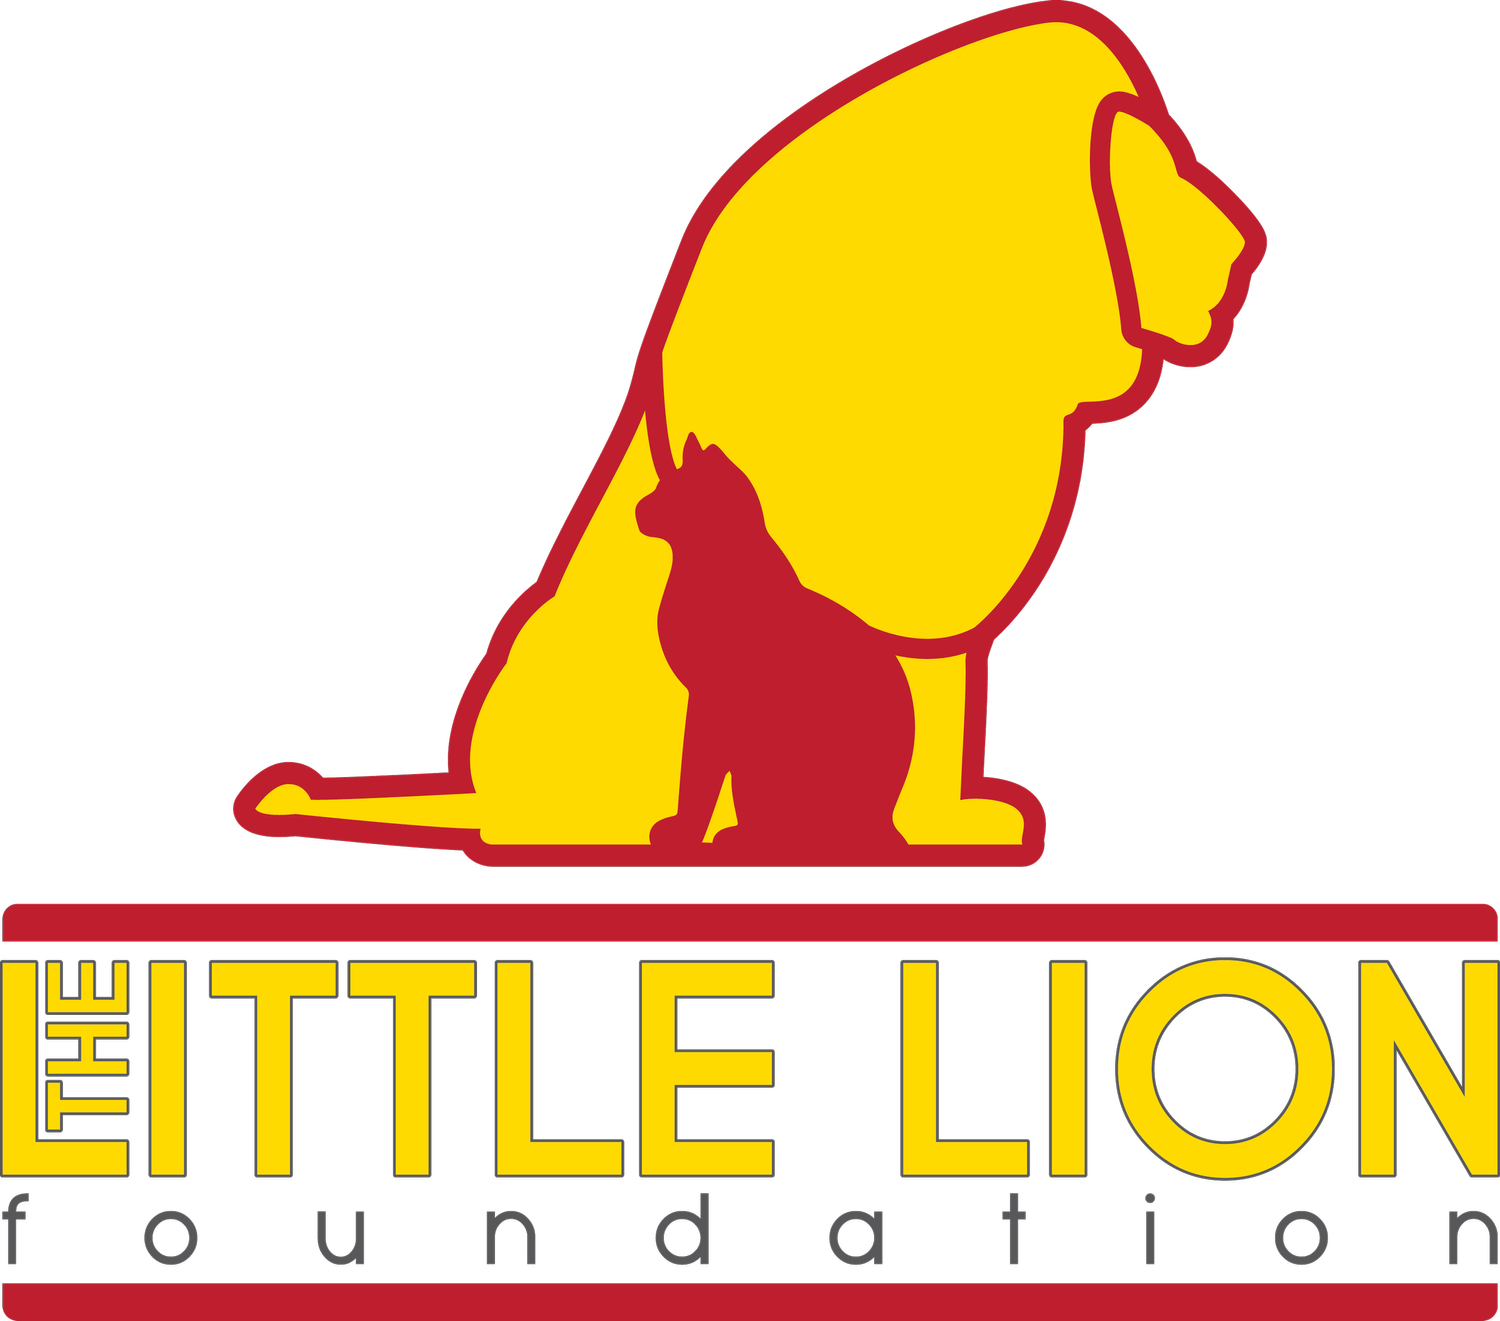 The Little Lion Foundation